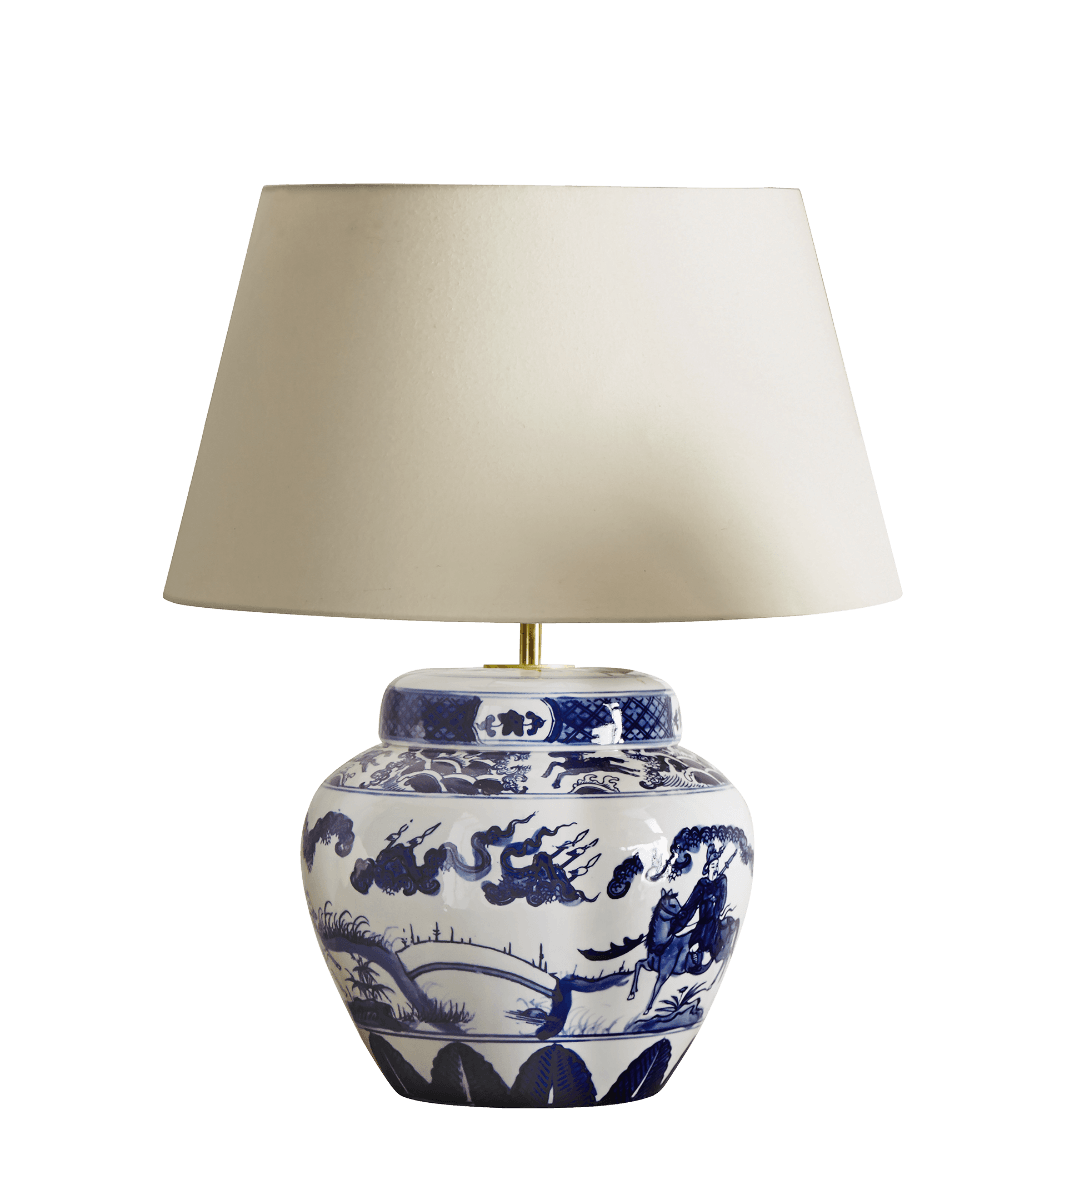 Kraakware Ceramic Table Lamp